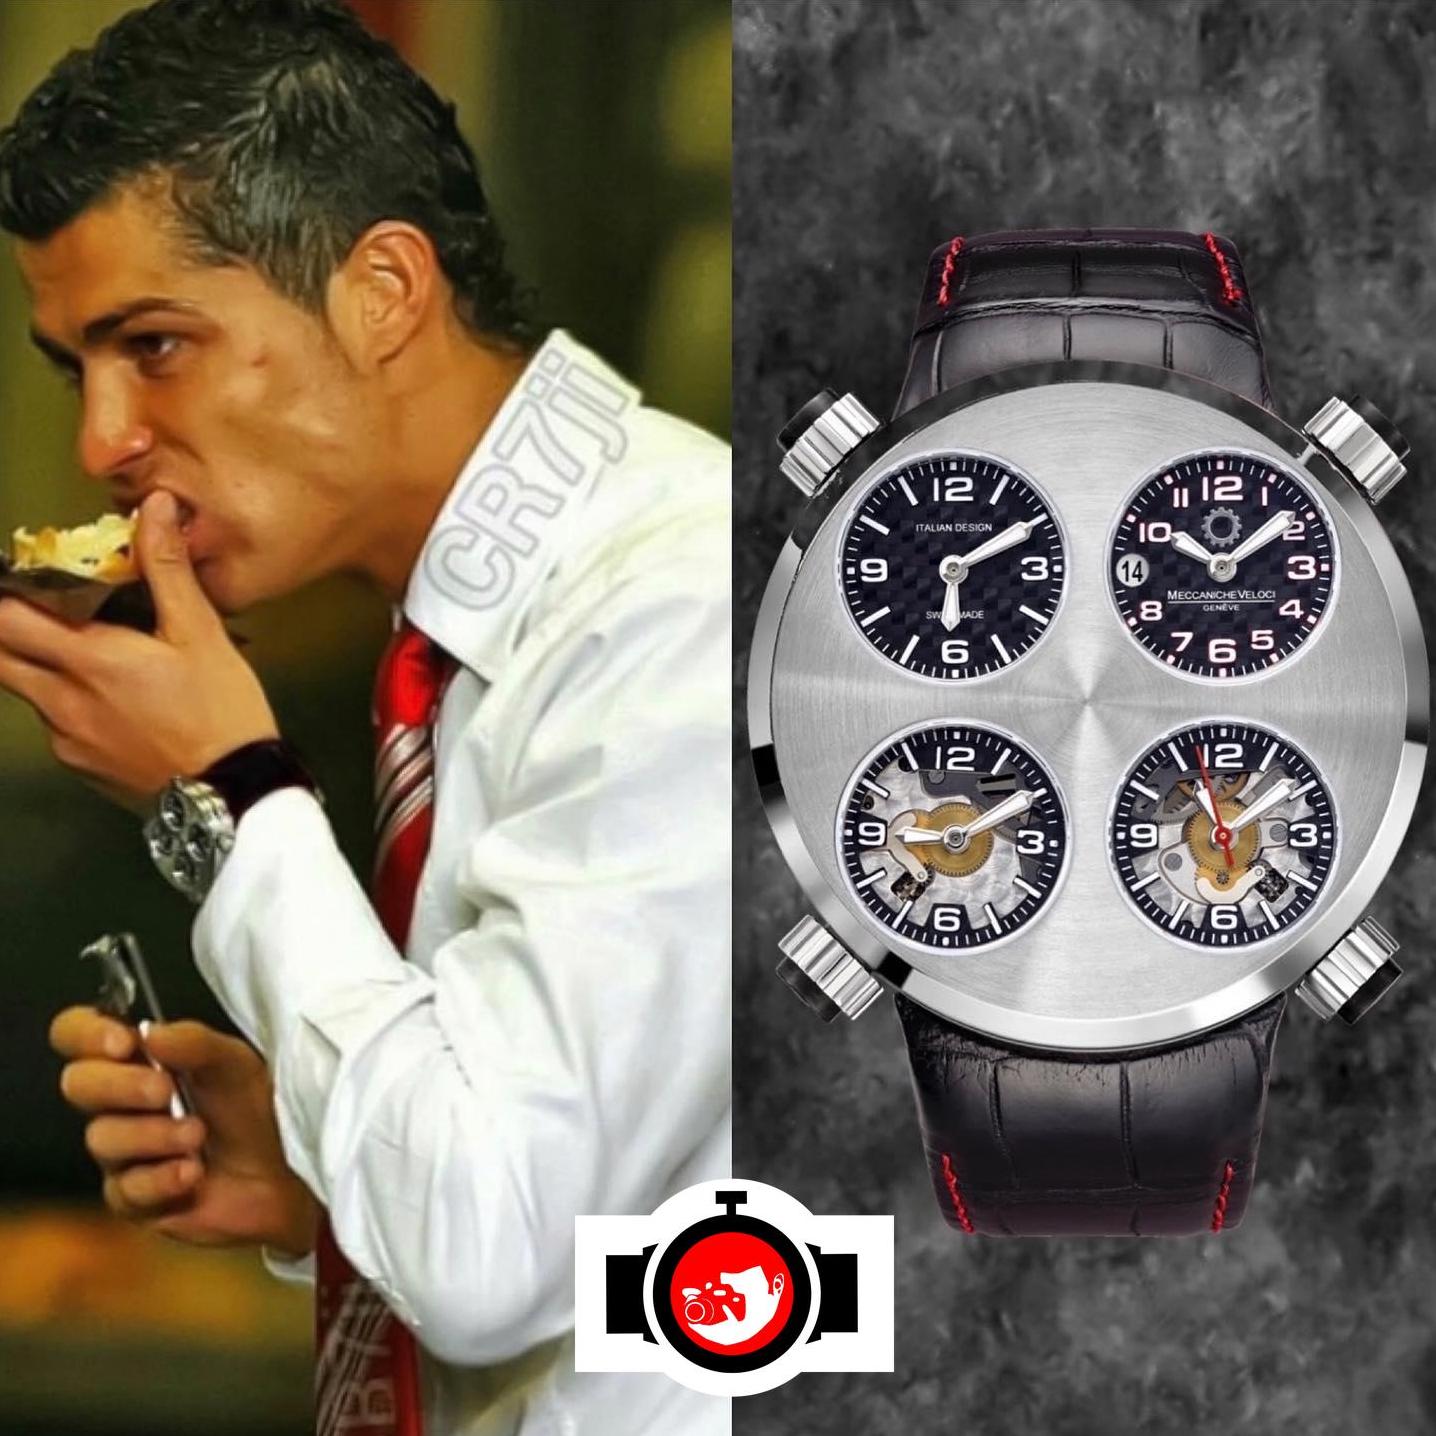 footballer Cristiano Ronaldo spotted wearing a Meccaniche Veloci W01NC1SK